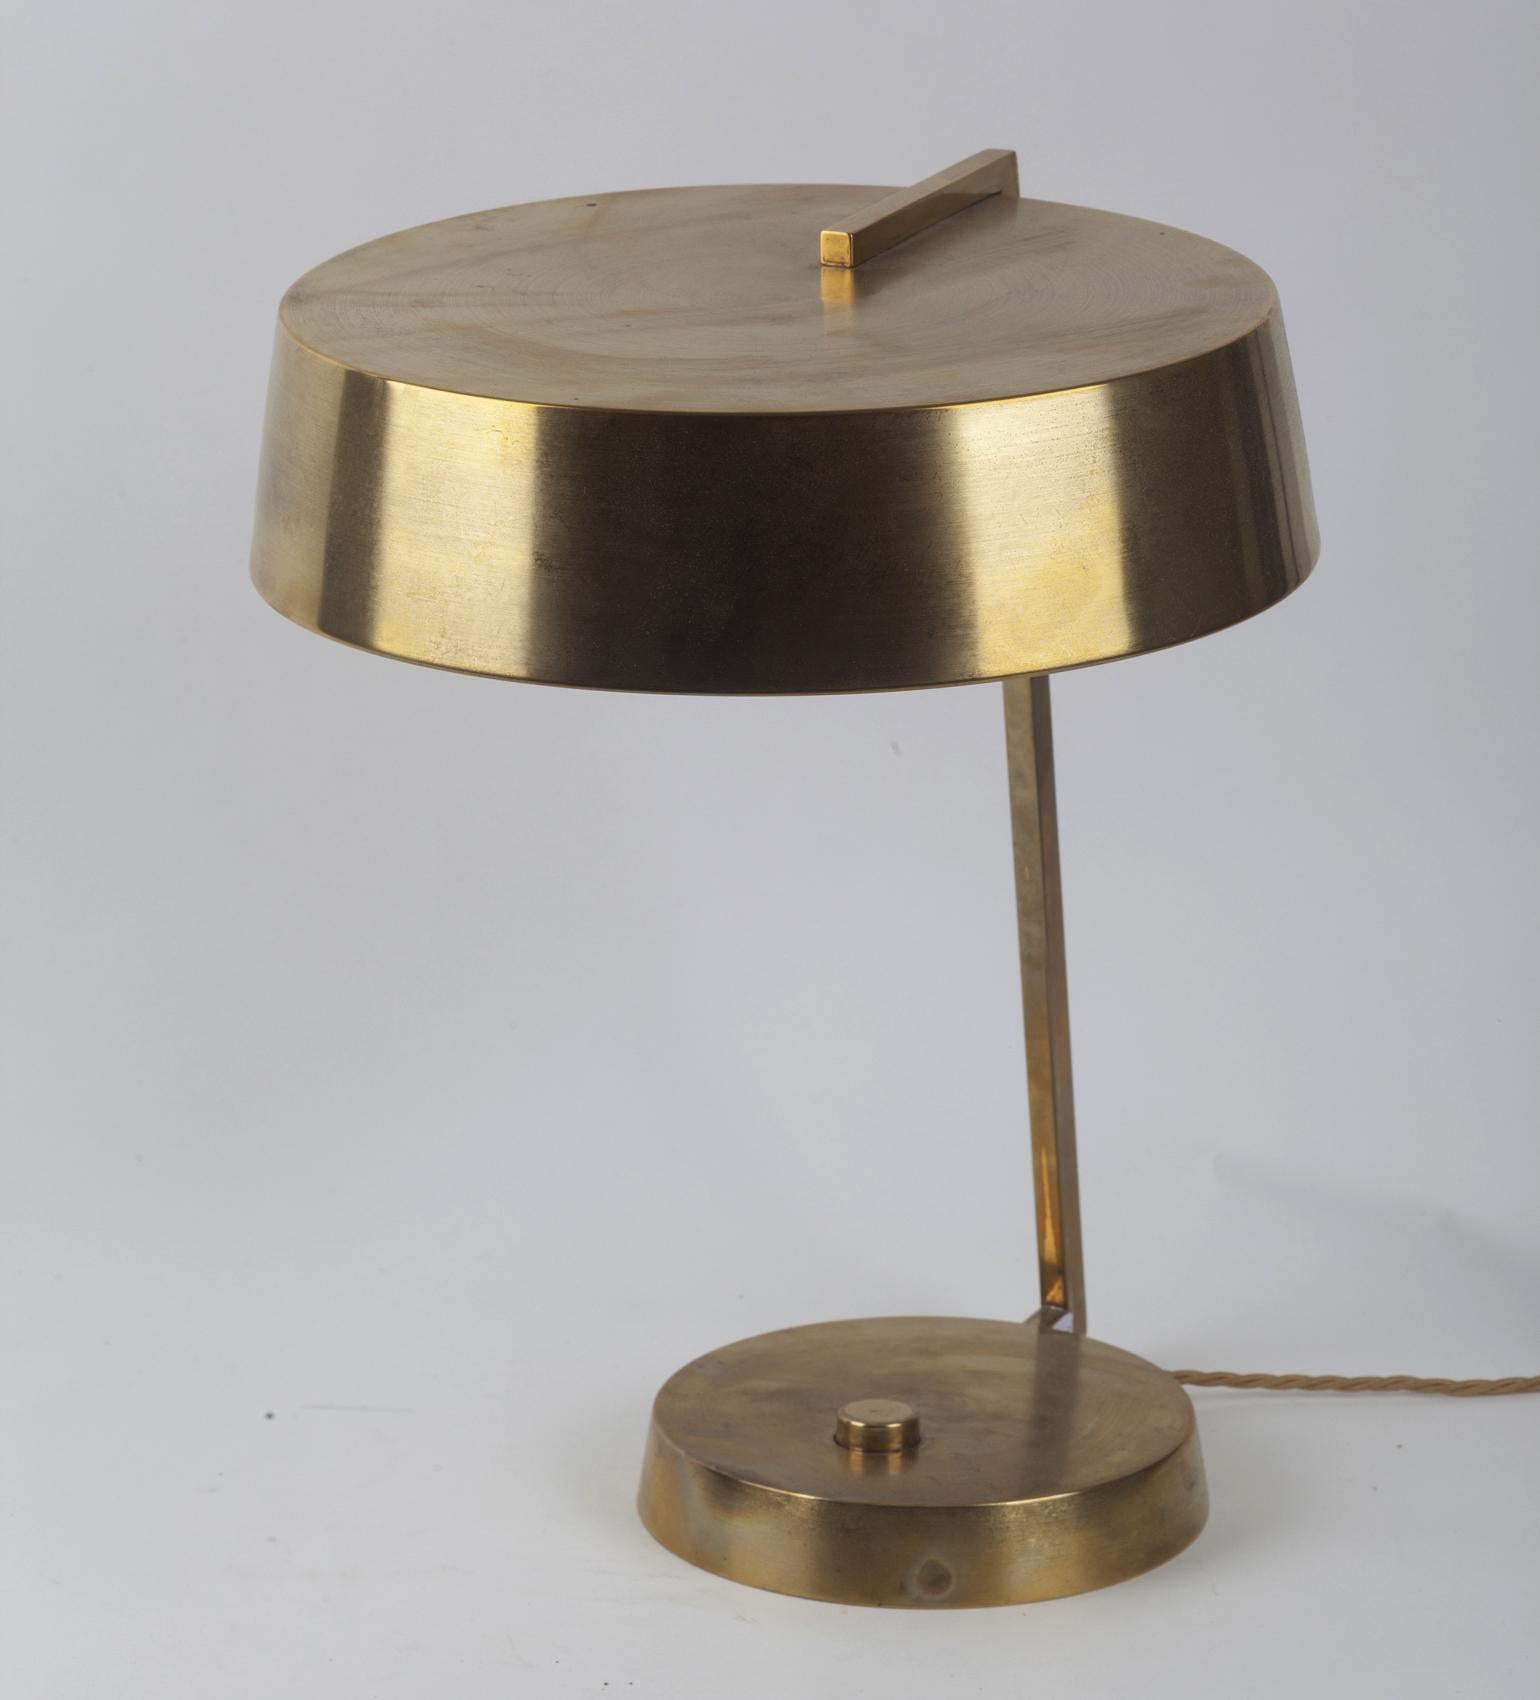 Lampe de table ou de bureau italienne des années 1950 par Stilux, Milano. Il possède un abat-jour rond en laiton soutenu par un bras en laiton et une base ronde en laiton.
  